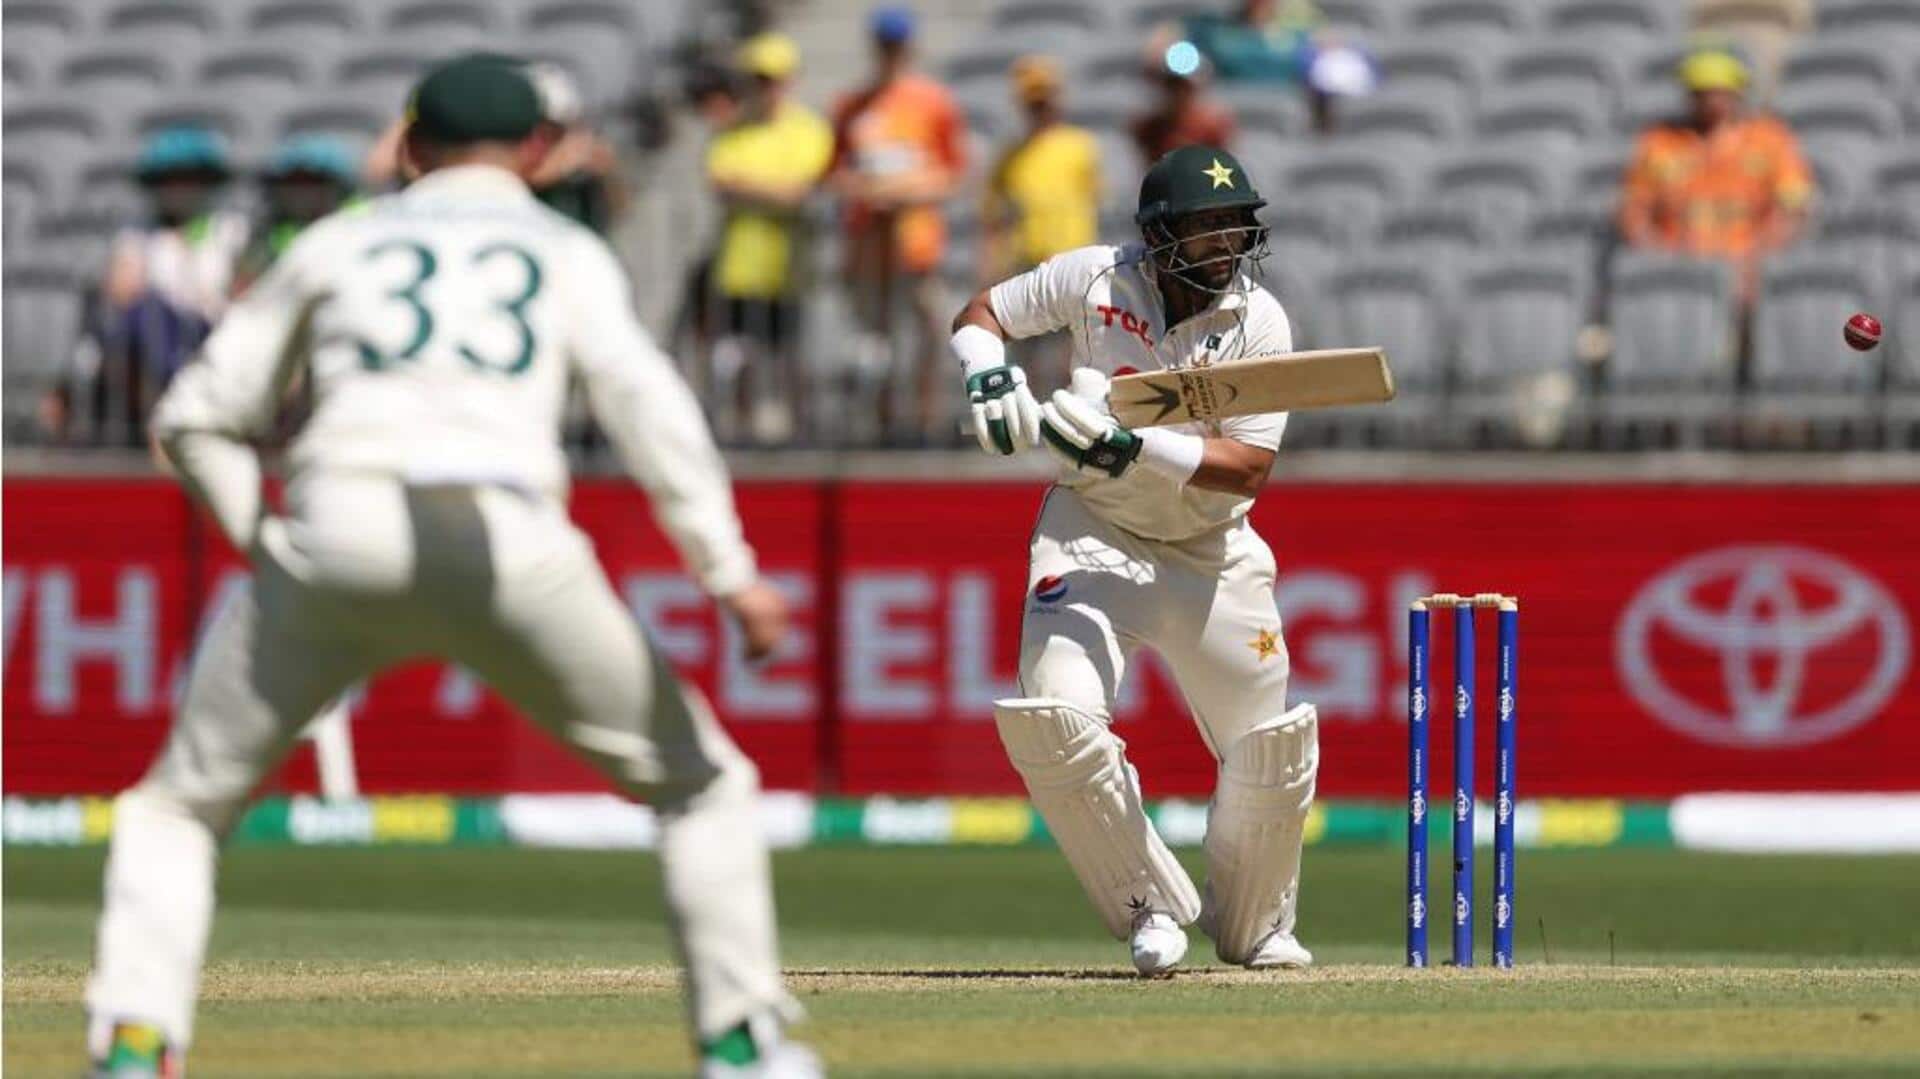 Imam-ul-Haq smokes his fifth 50-plus Test score against Australia